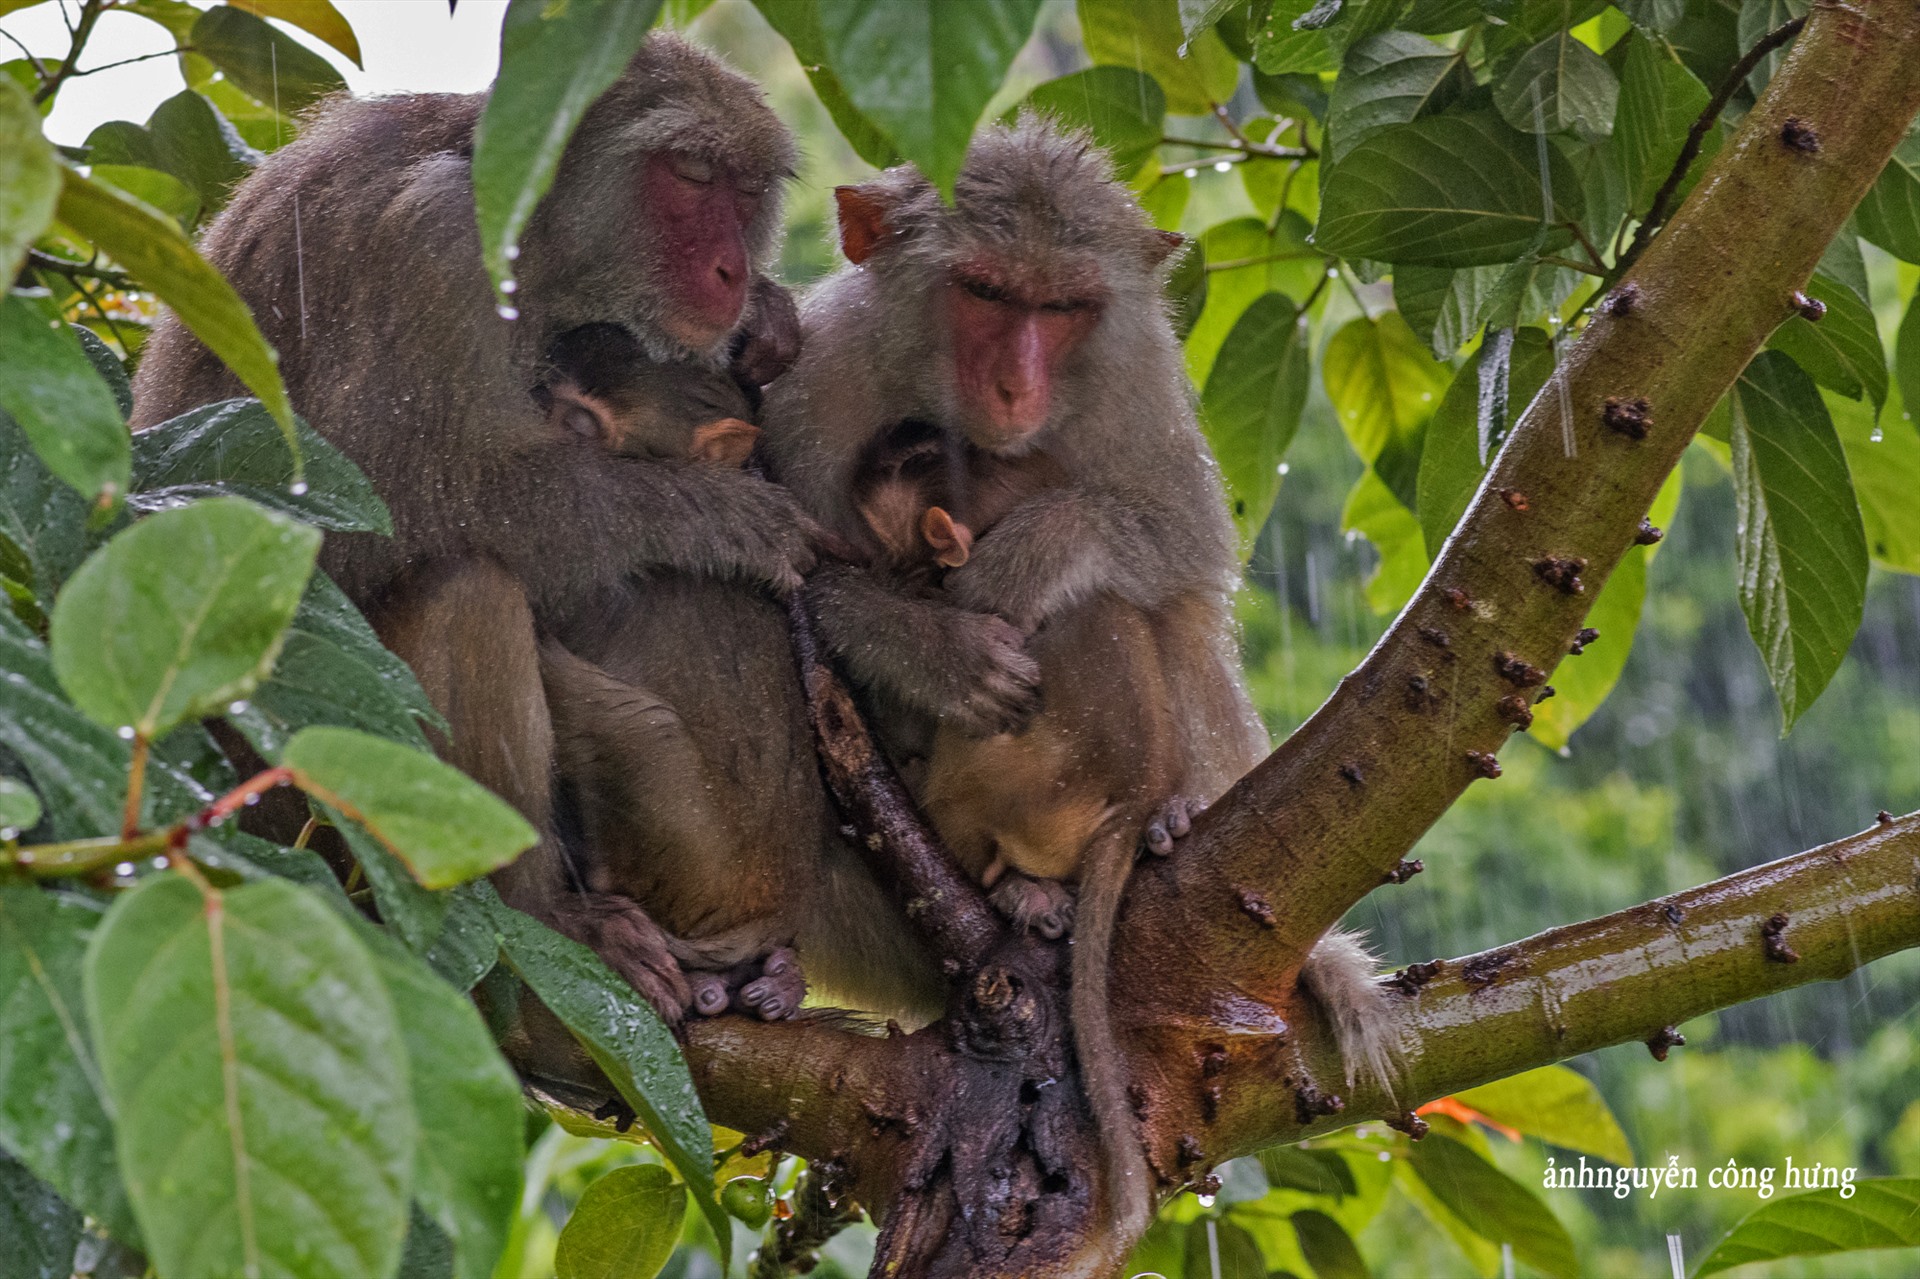 Đảo Khỉ là một điểm đến nổi tiếng thu hút du khách từ khắp nơi đến thám hiểm và khám phá với nhiều loài khỉ đáng yêu và thân thiện. Hãy cùng xem những hình ảnh của đảo để trải nghiệm cuộc phiêu lưu đầy mạo hiểm với những người bạn lông lá của chúng ta.